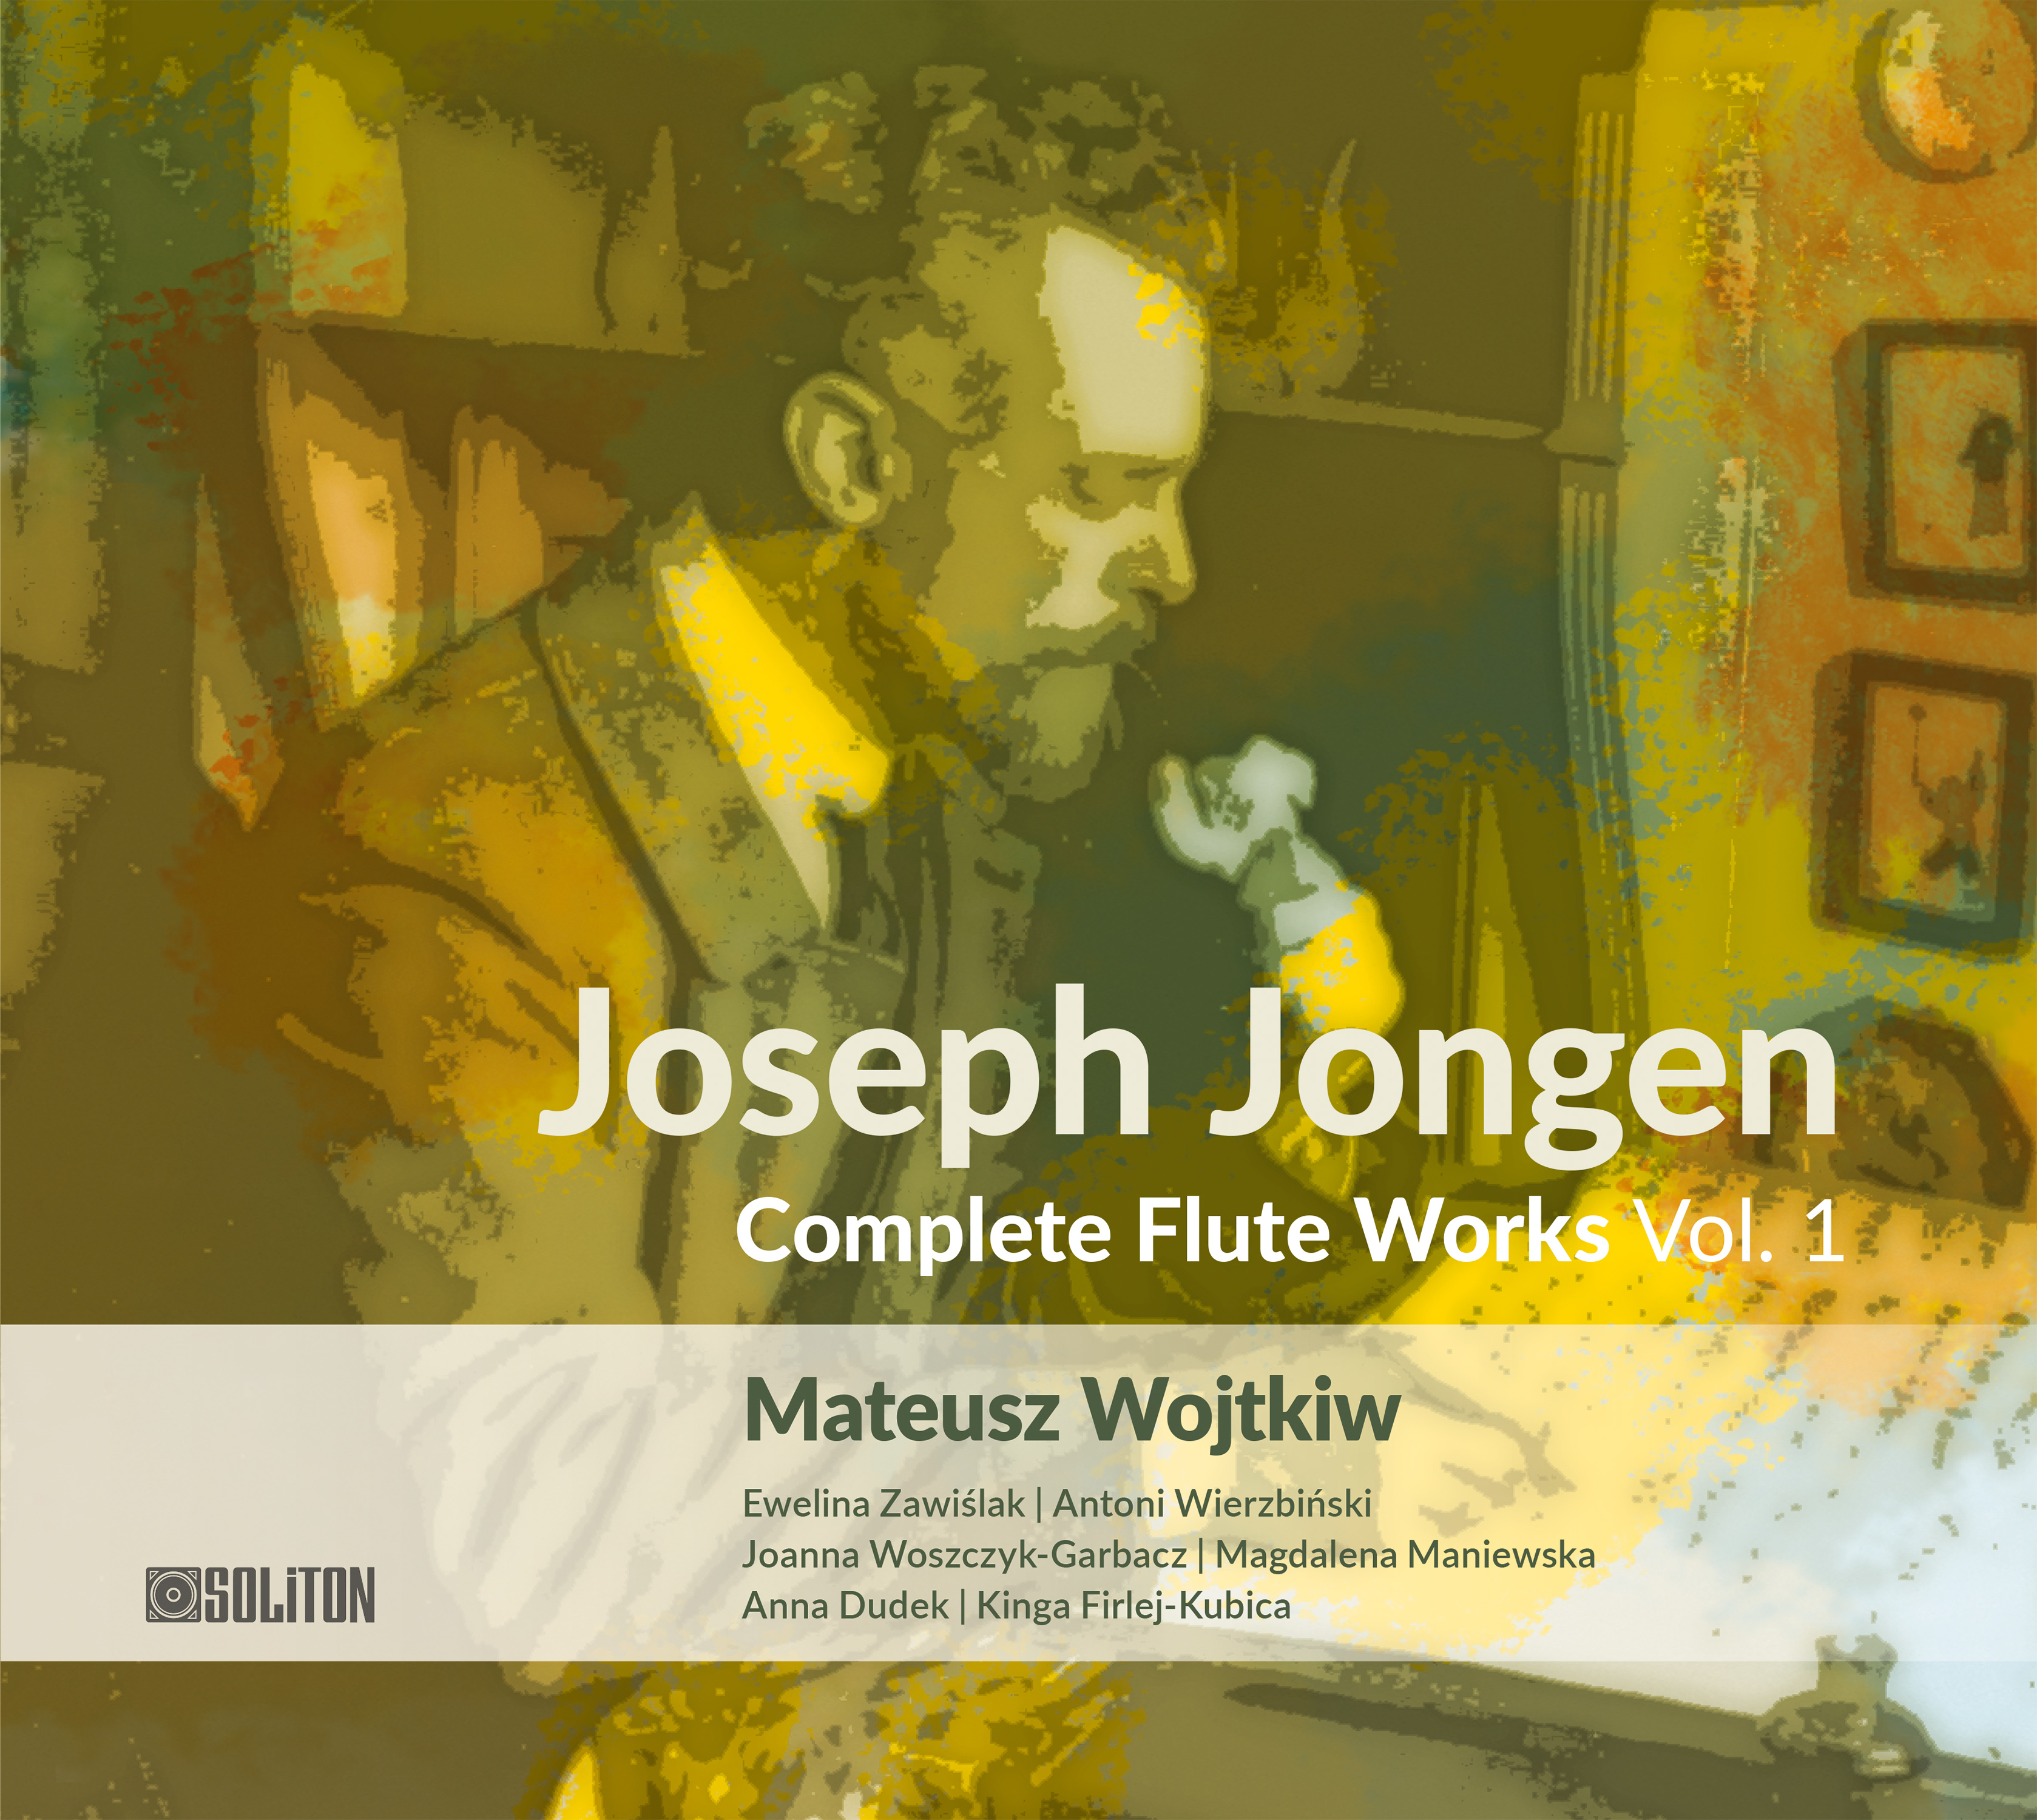 Joseph Jongen – Complete Flute Works vol. 1